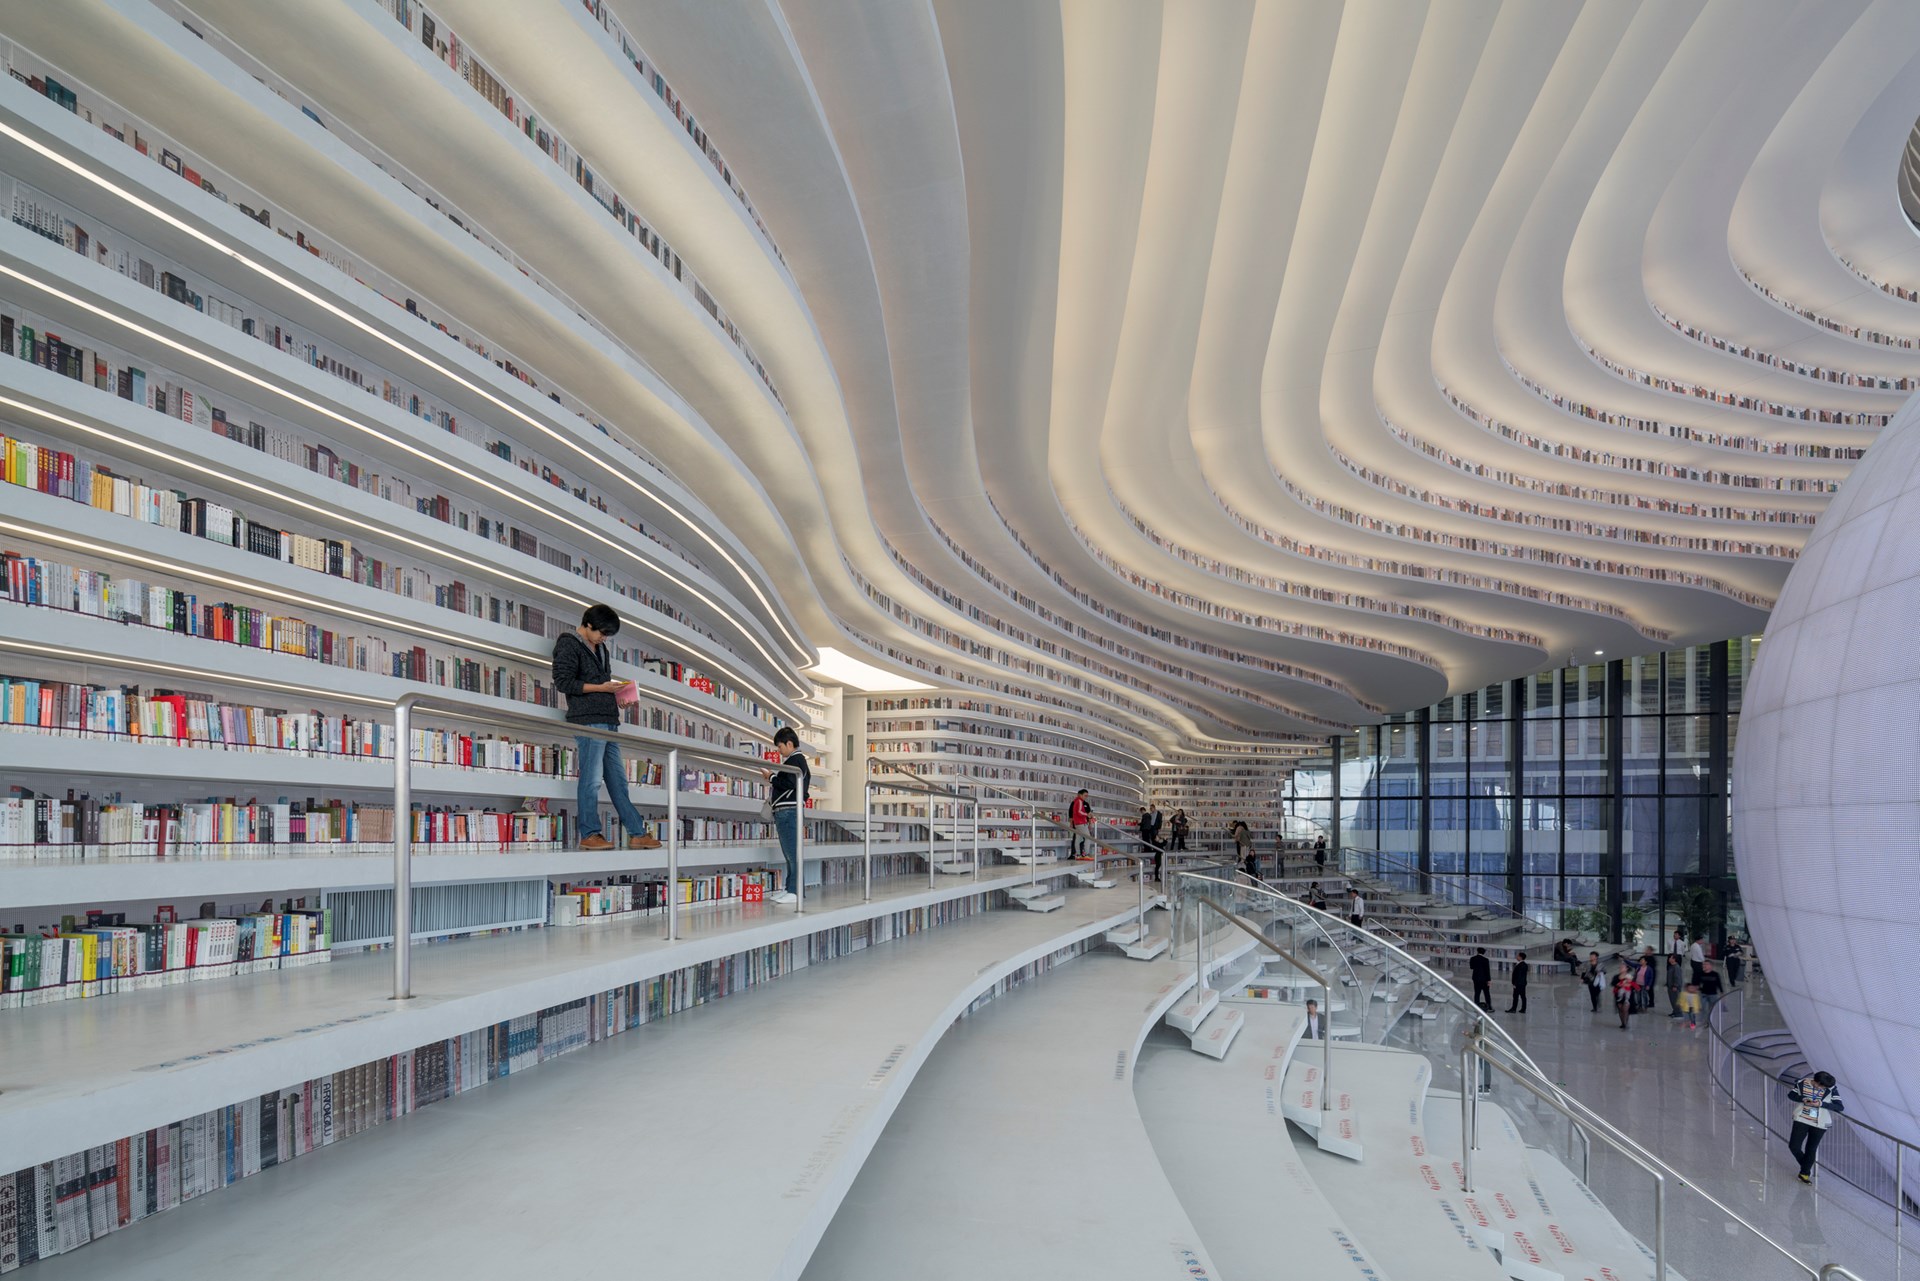 Több mint egymillió könyv otthona ez a futurisztikus épület 8